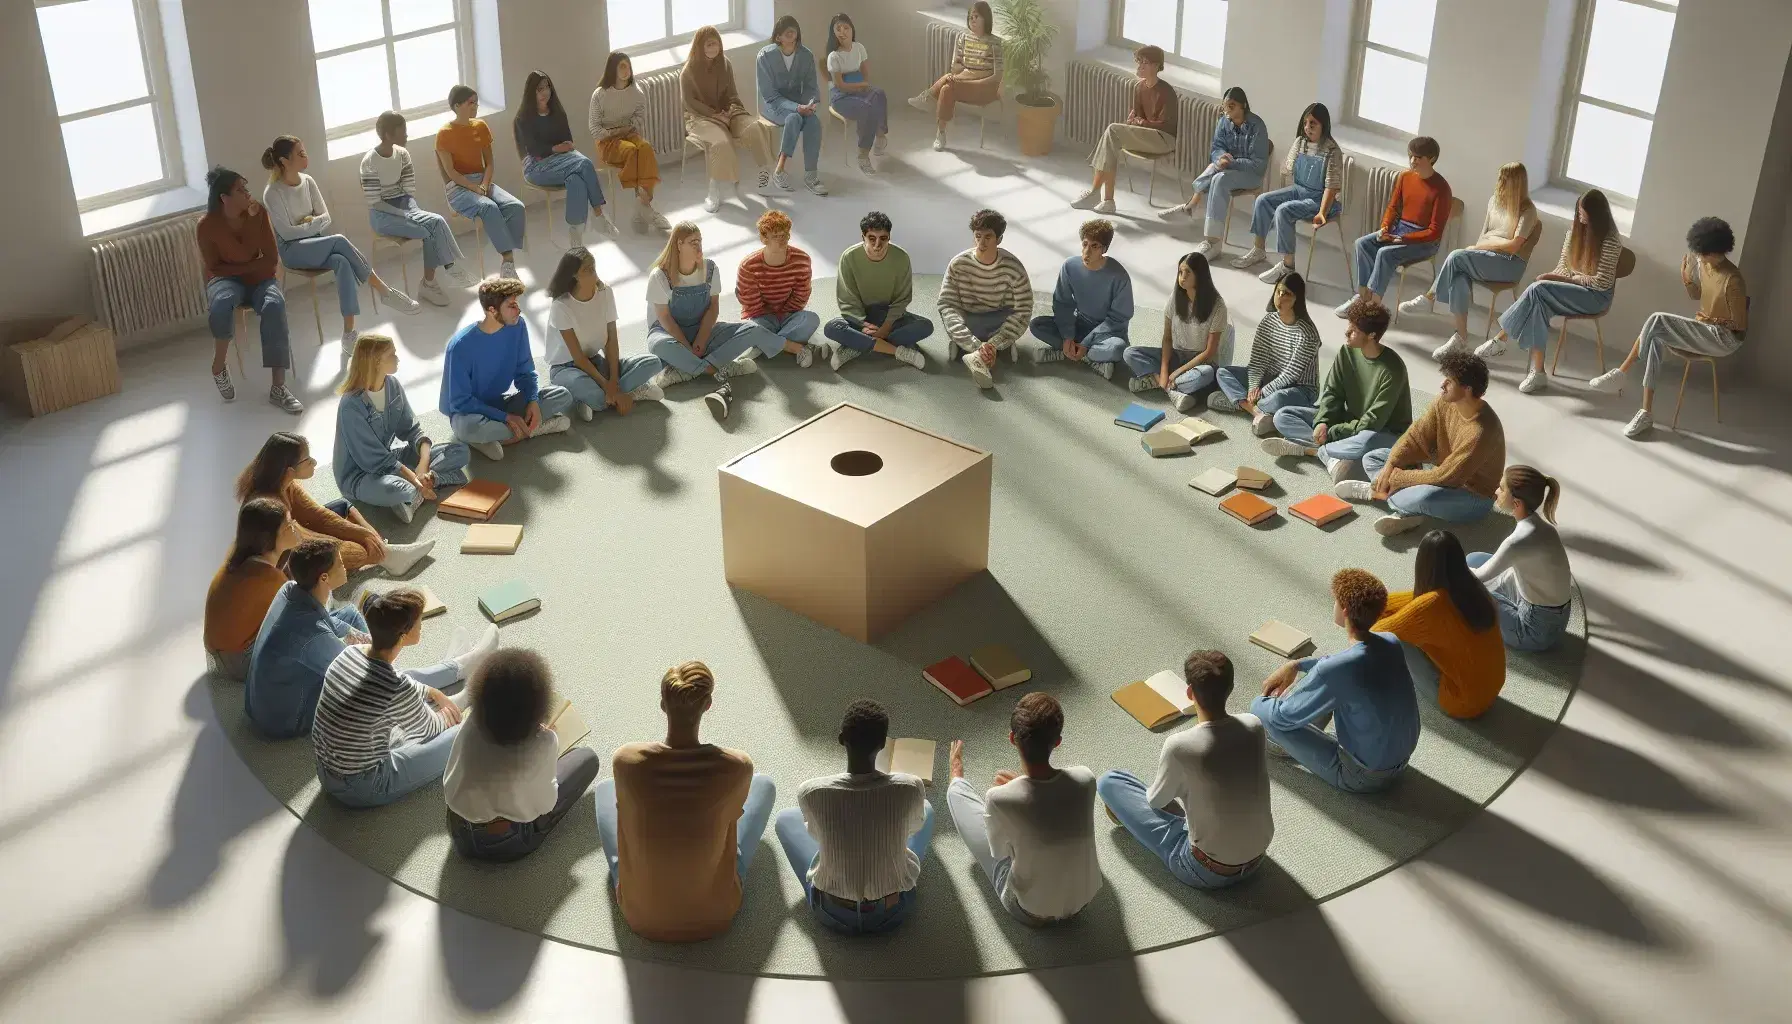 Grupo diverso de estudiantes sentados en círculo en el suelo con una caja de sugerencias en el centro, discutiendo activamente en una sala iluminada naturalmente.